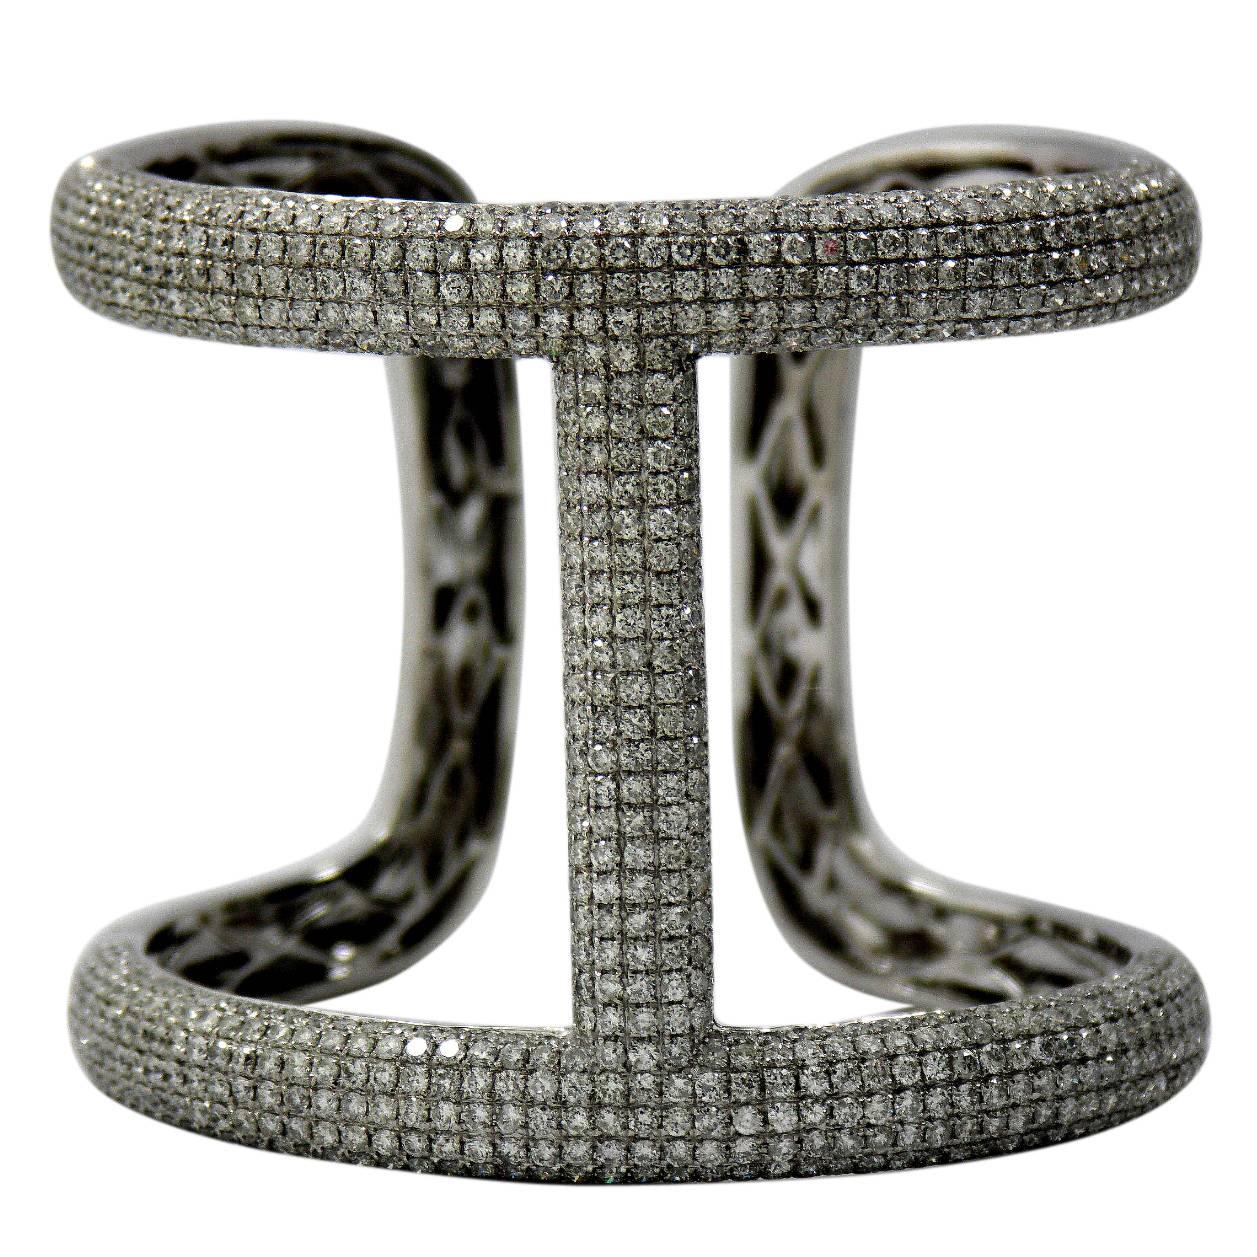 Stylish and Large Diamond Gold Encrusted Bangle Bracelet